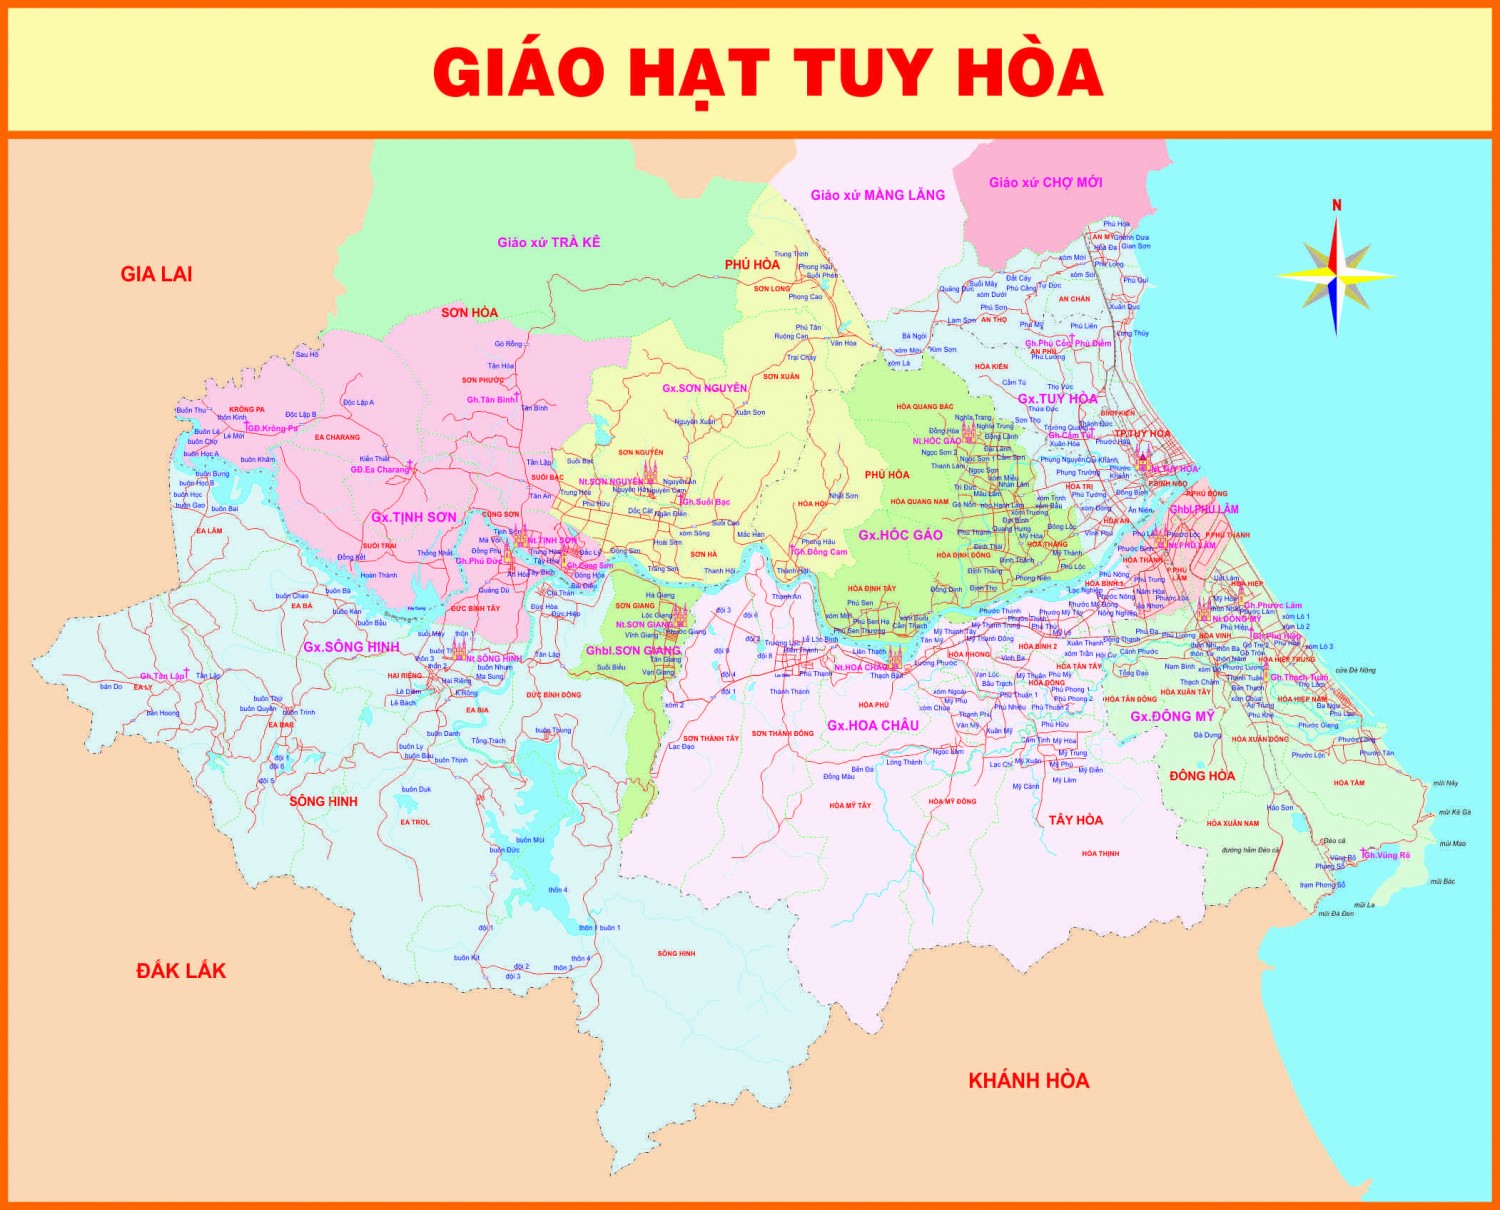 Lược sử Giáo xứ Phú Lâm